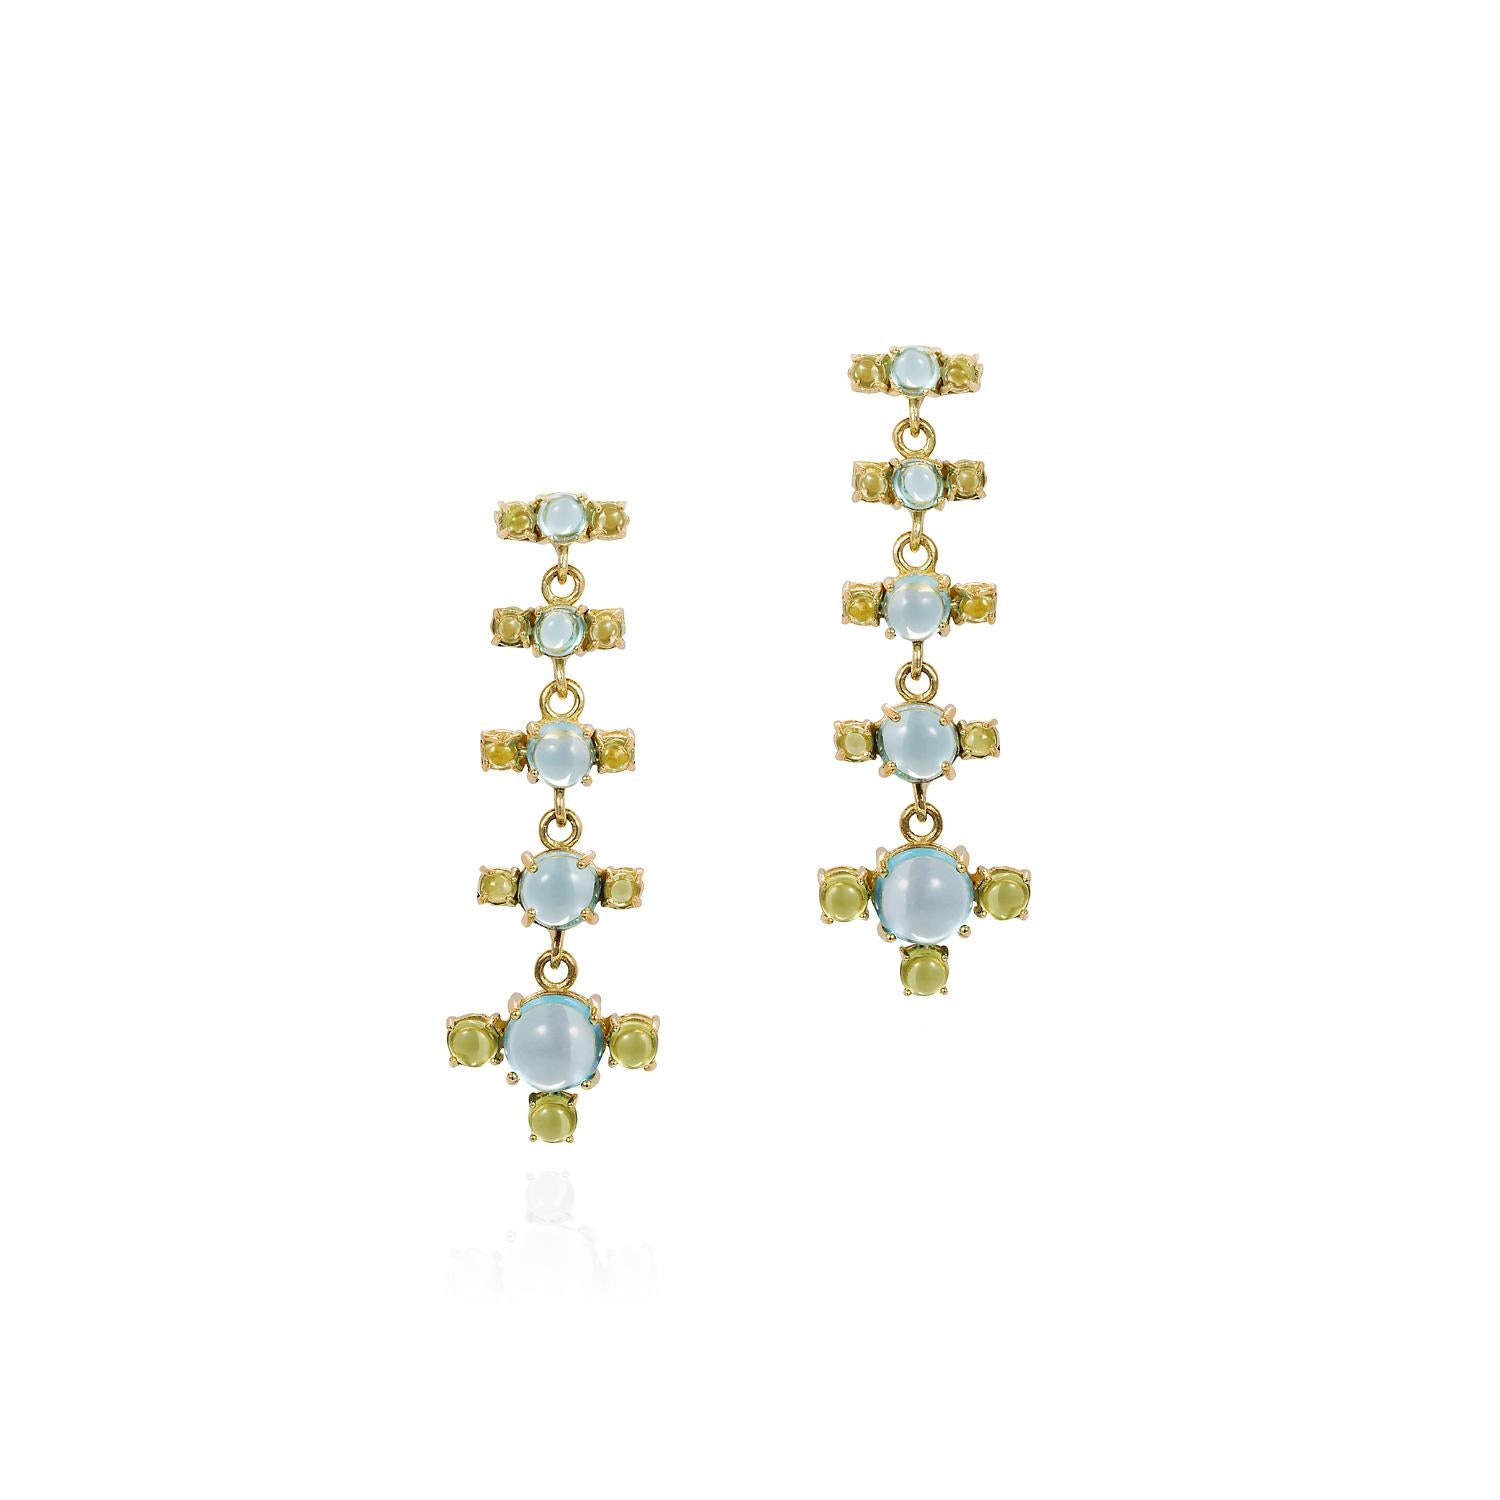 Contemporary Maviada's 18 Karat Gold Plus + Drop Earrings, Purple Amethyst and Green Peridot